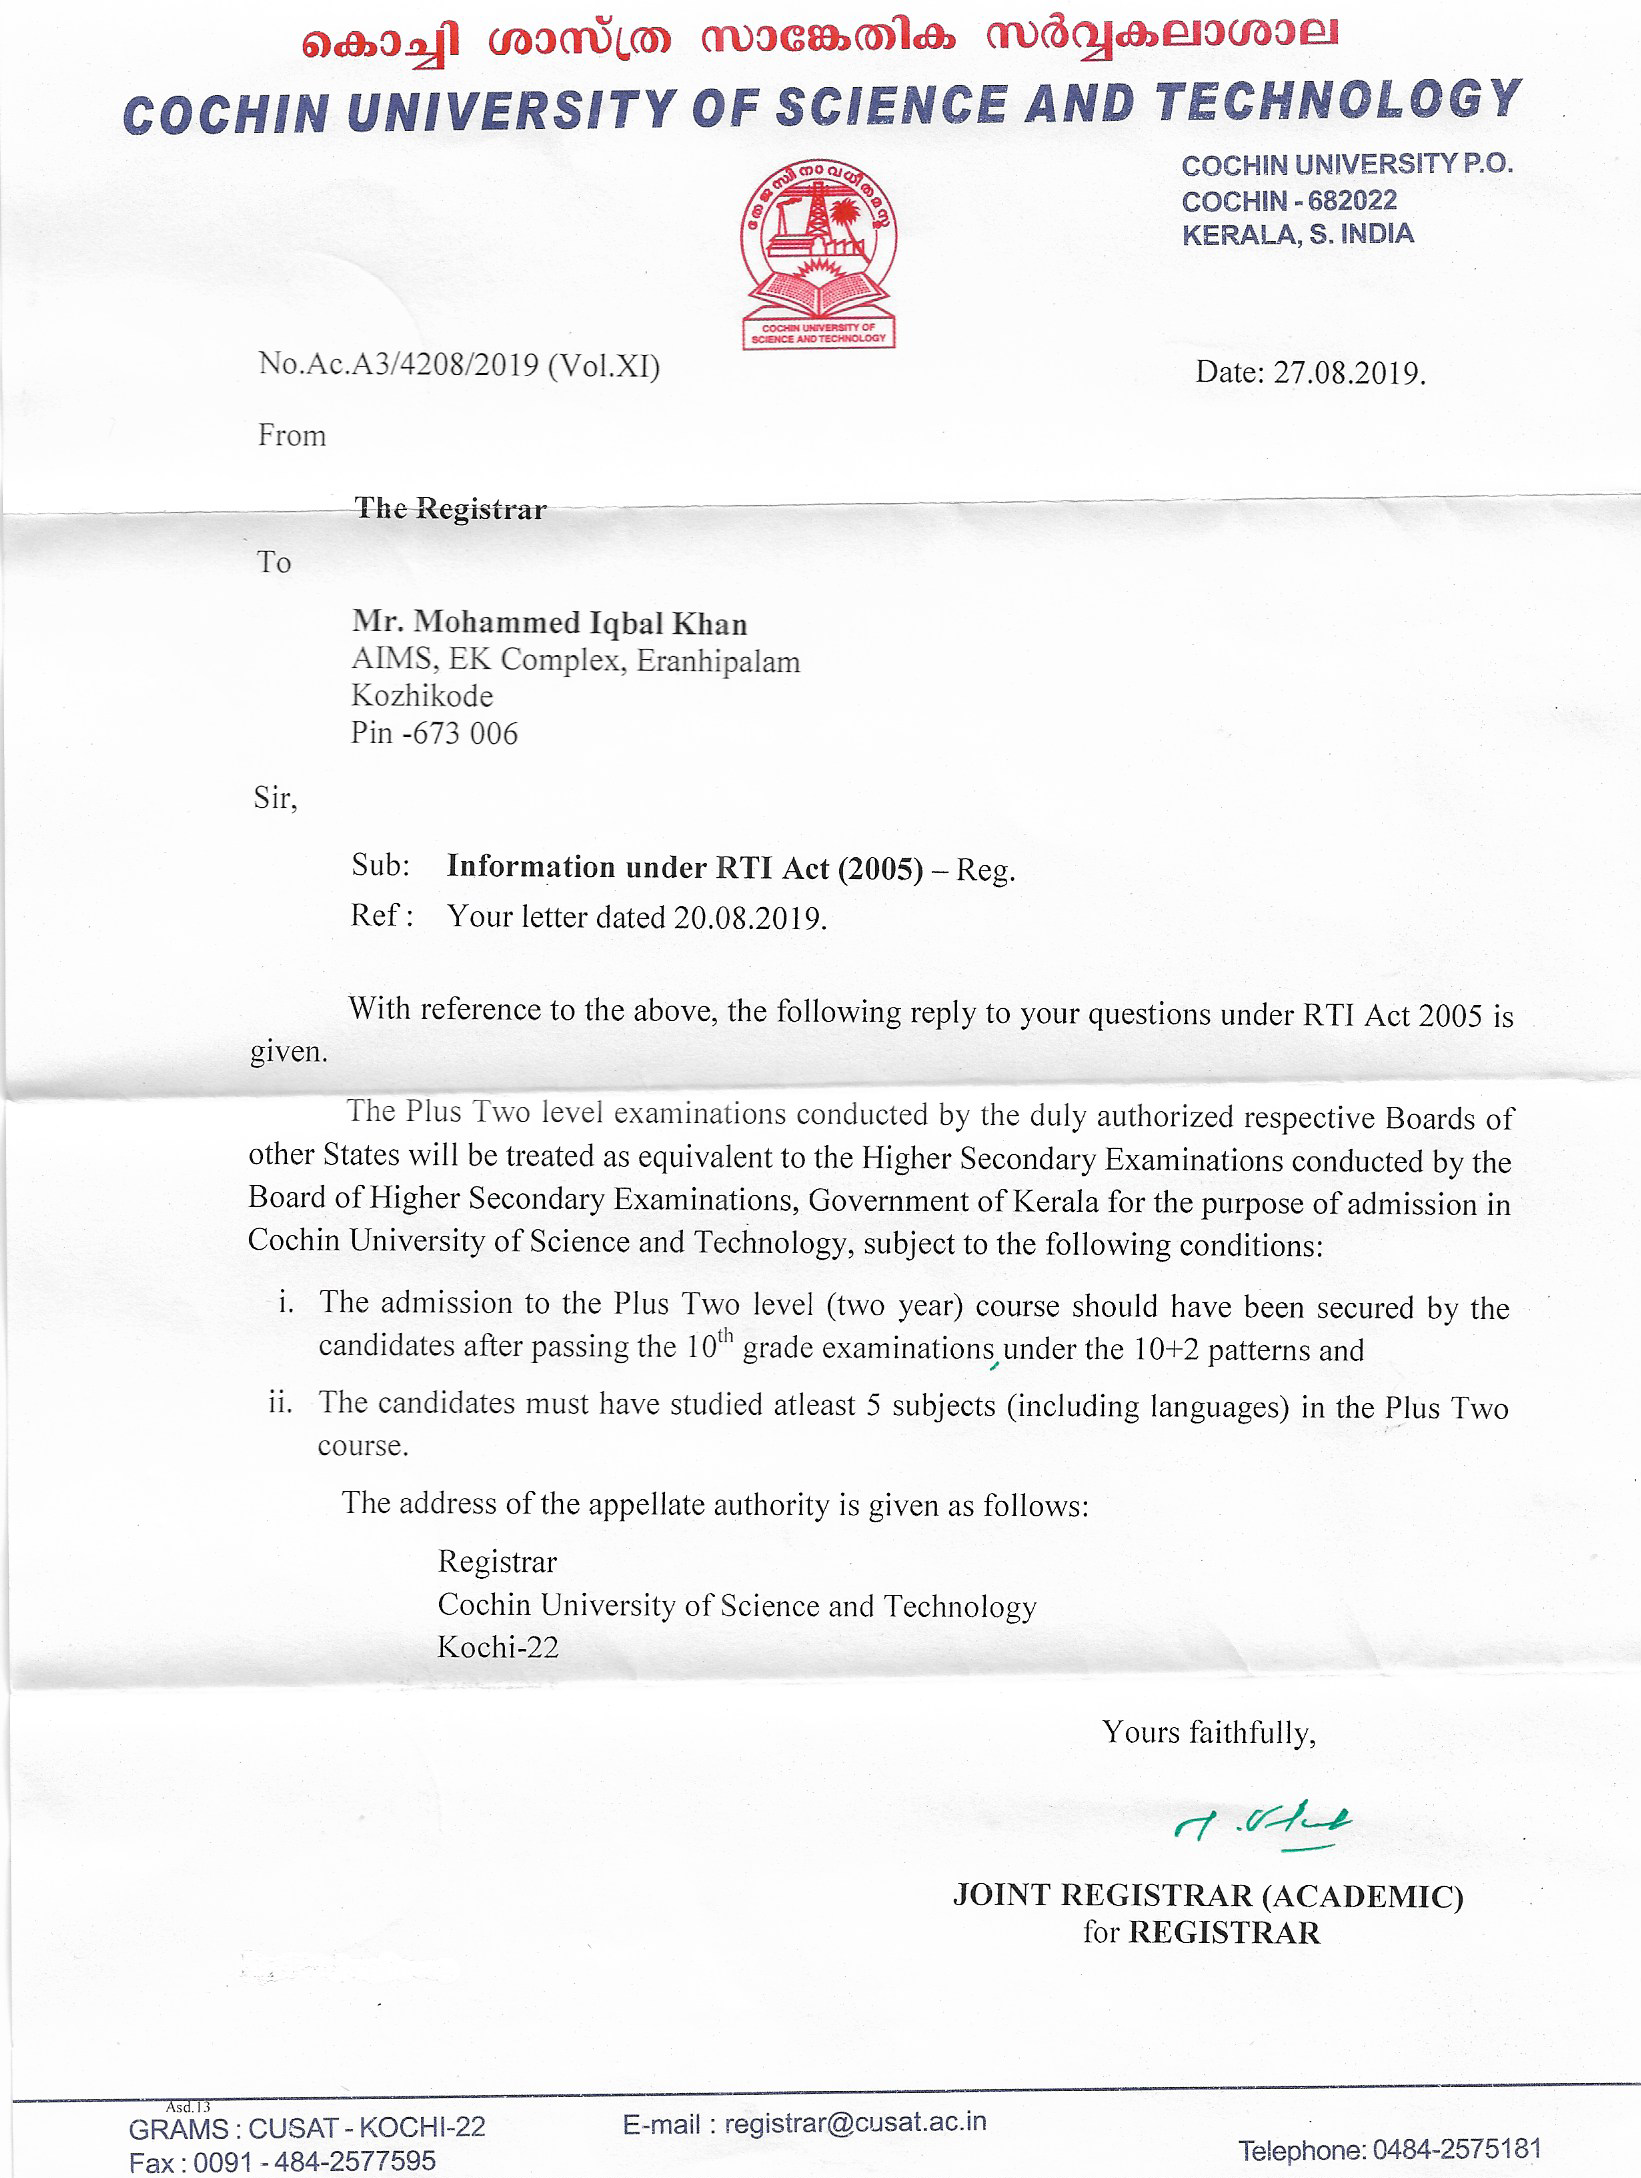 RTI Letter 08